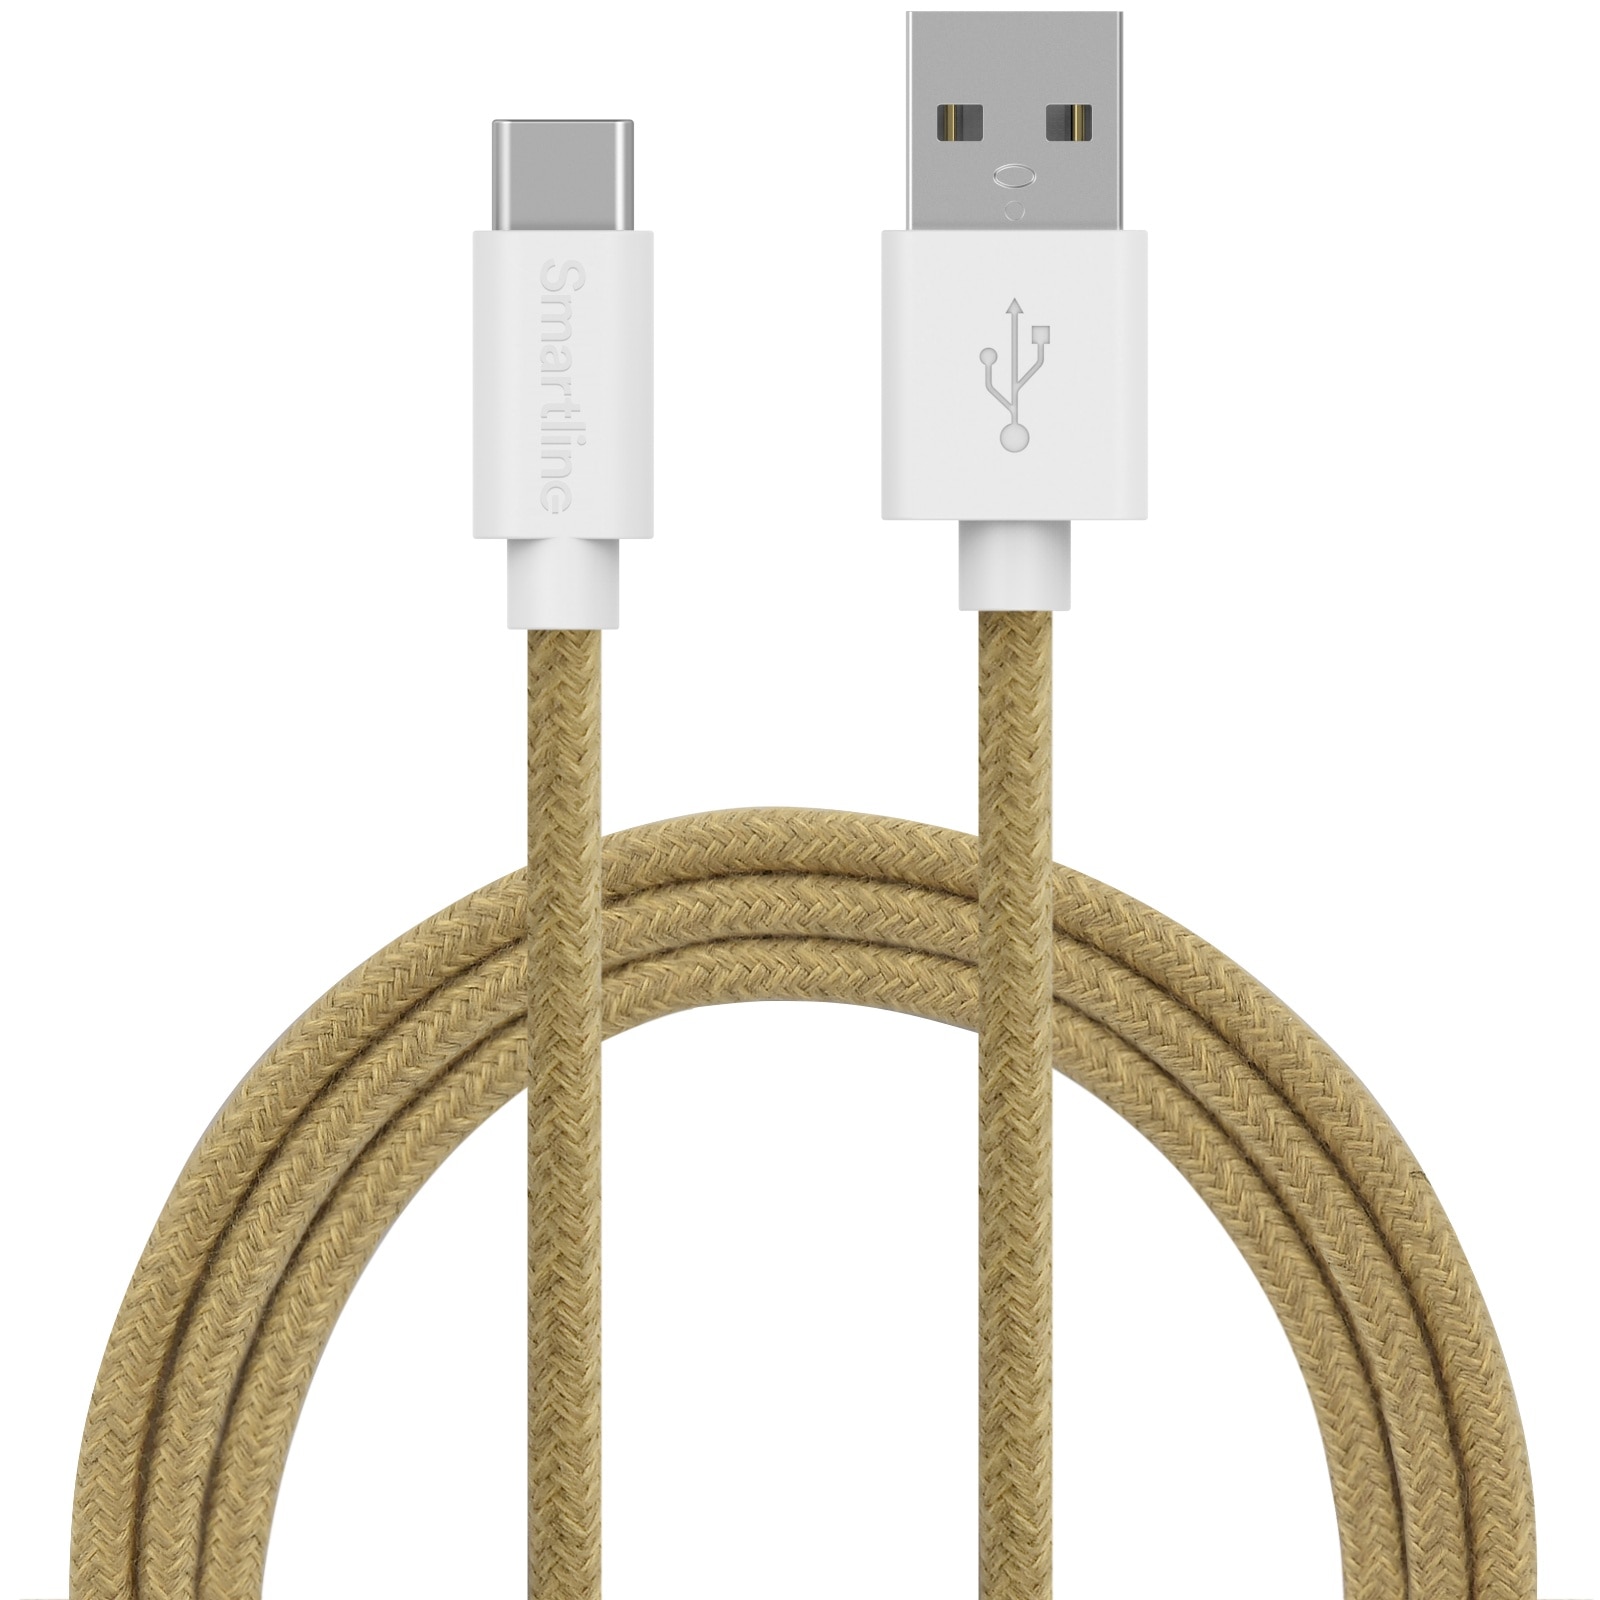 Fuzzy USB-kabel USB-C 2m Sand